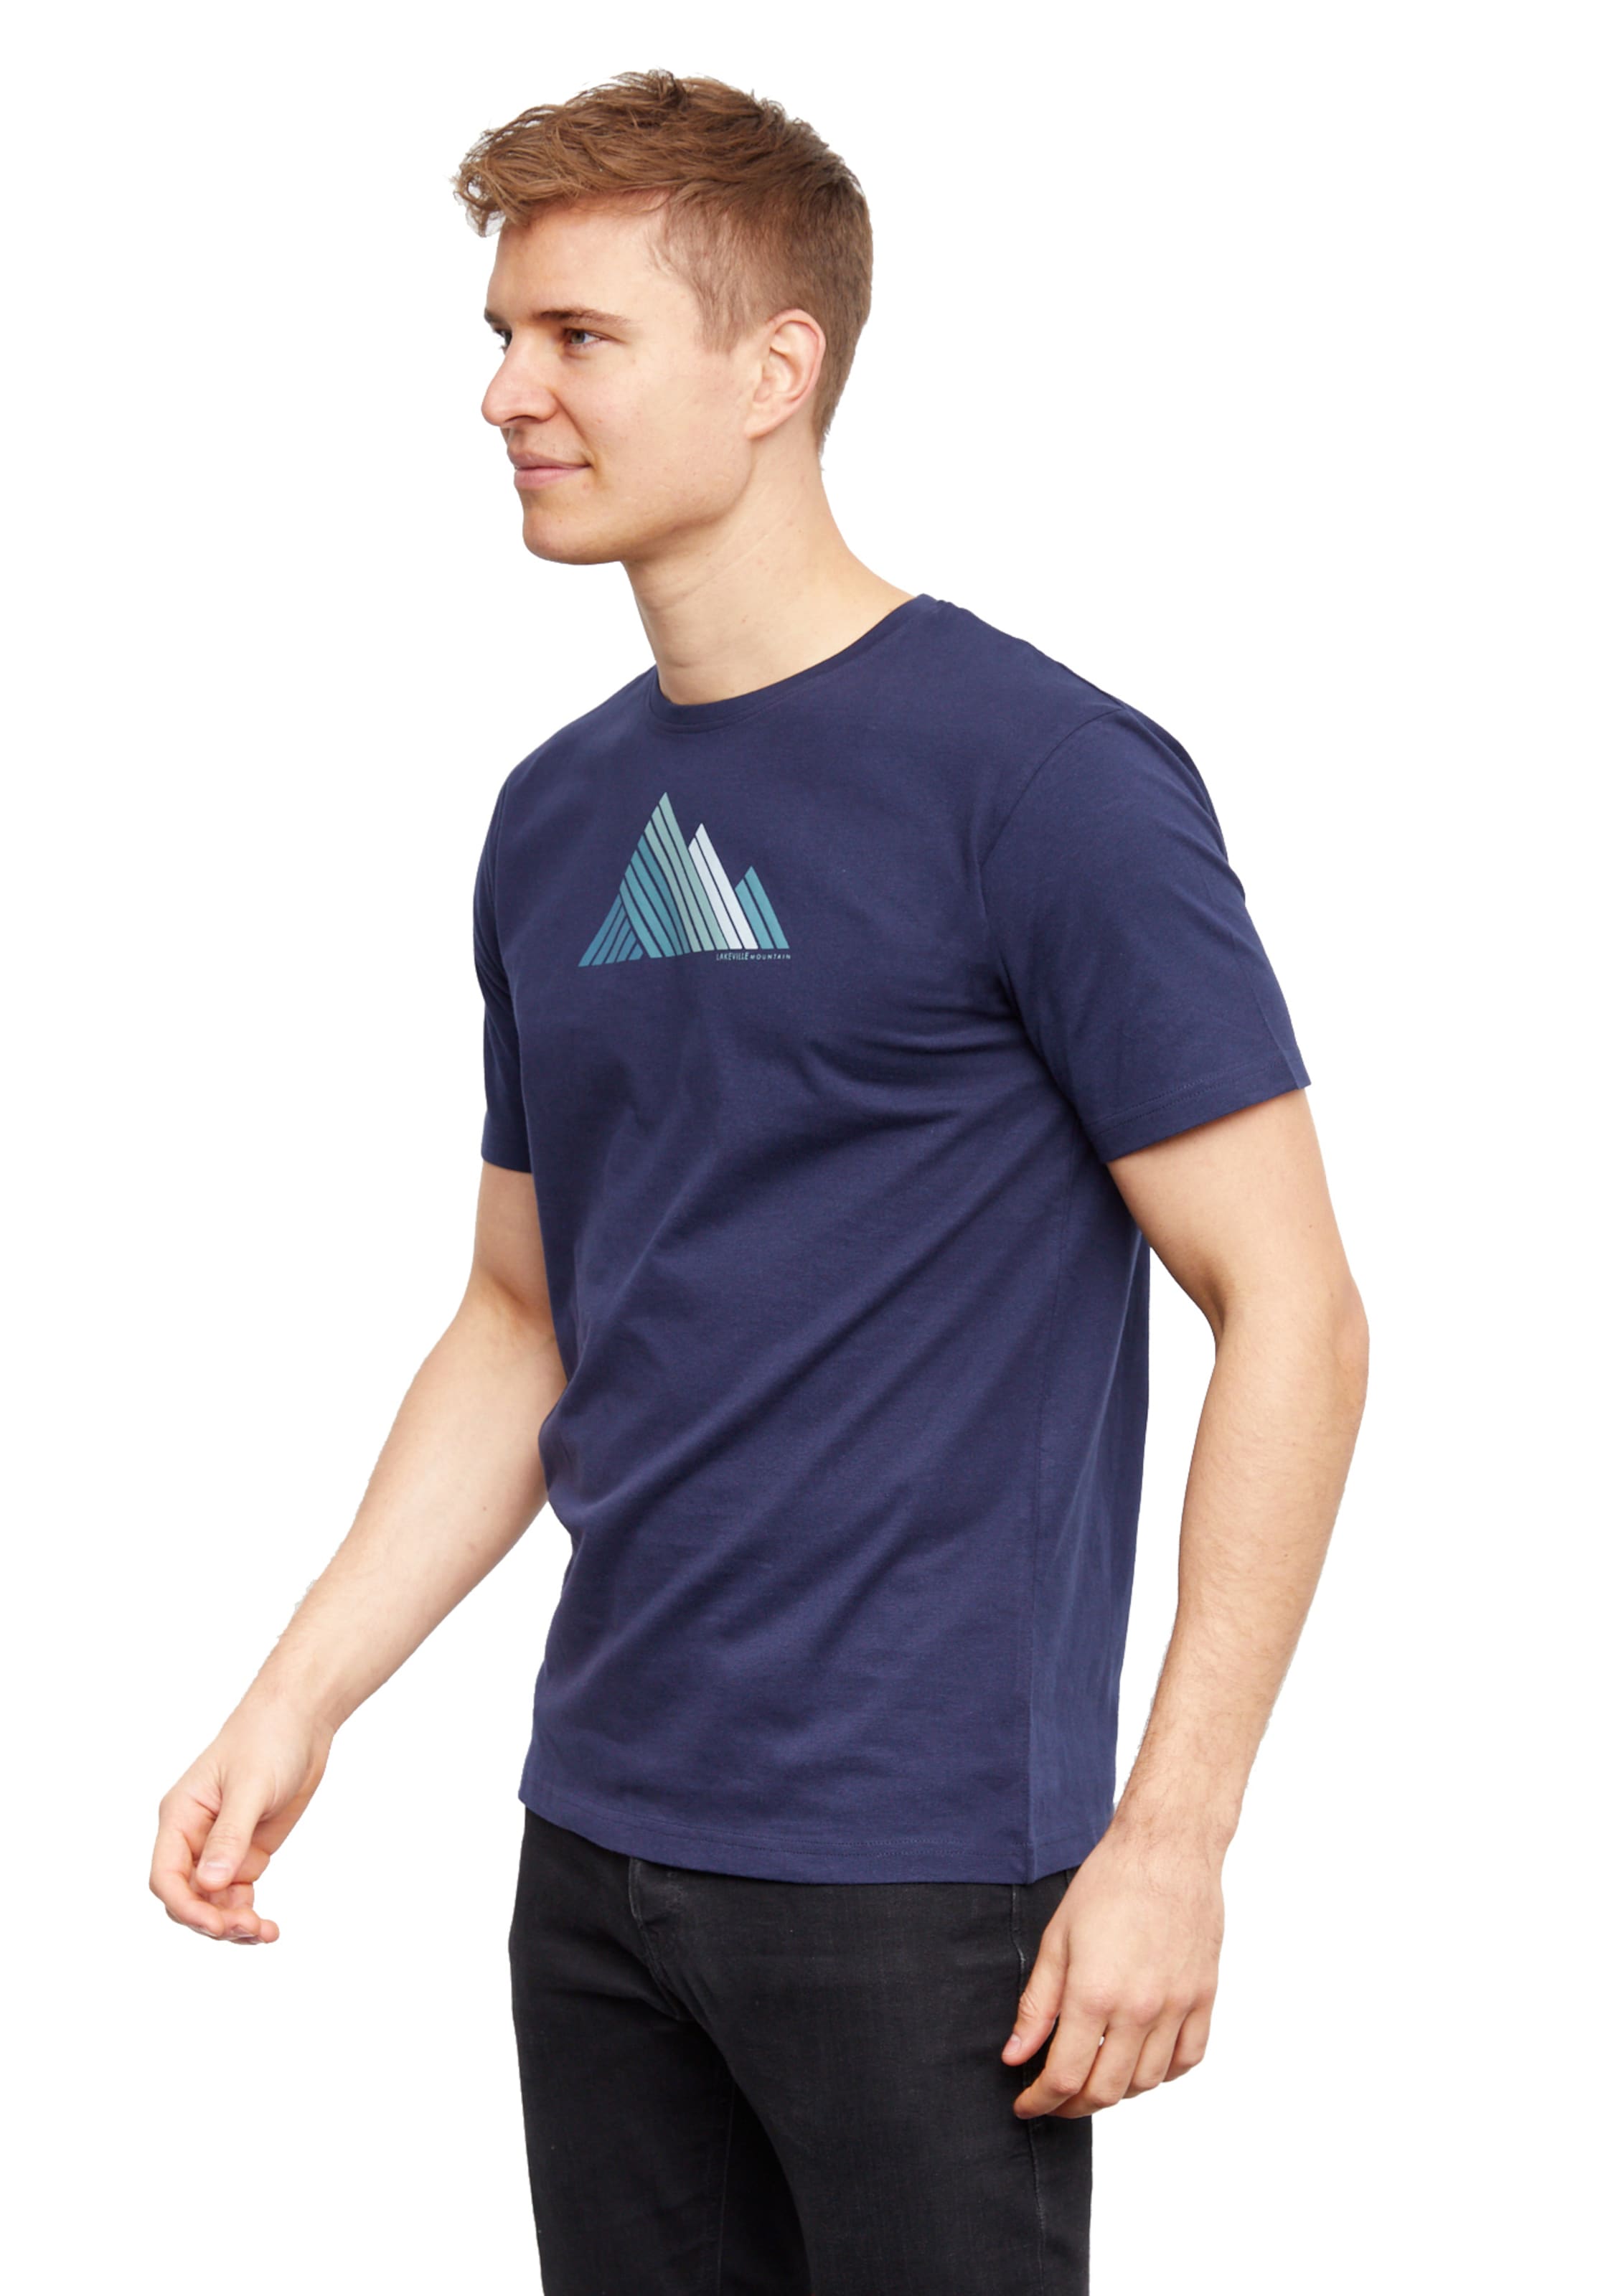 Männer Sportarten Lakeville Mountain T-Shirt in Grün - TE76186